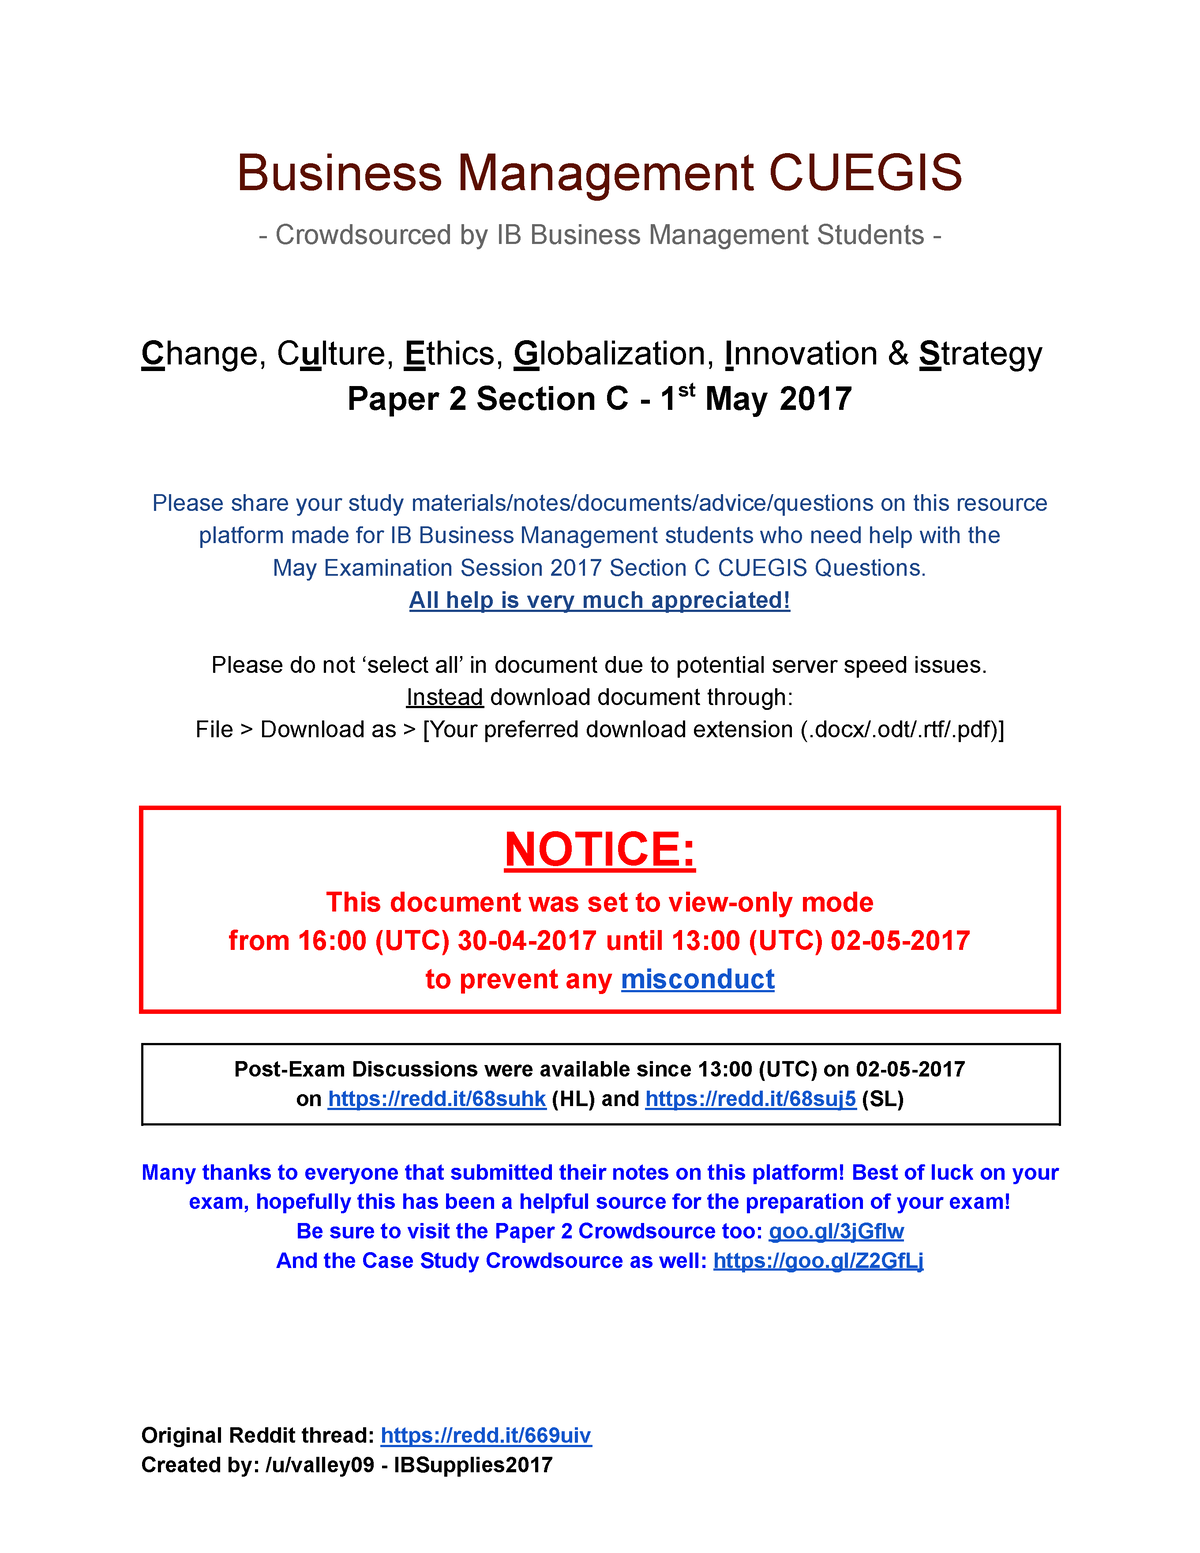 ib business management cuegis essay example